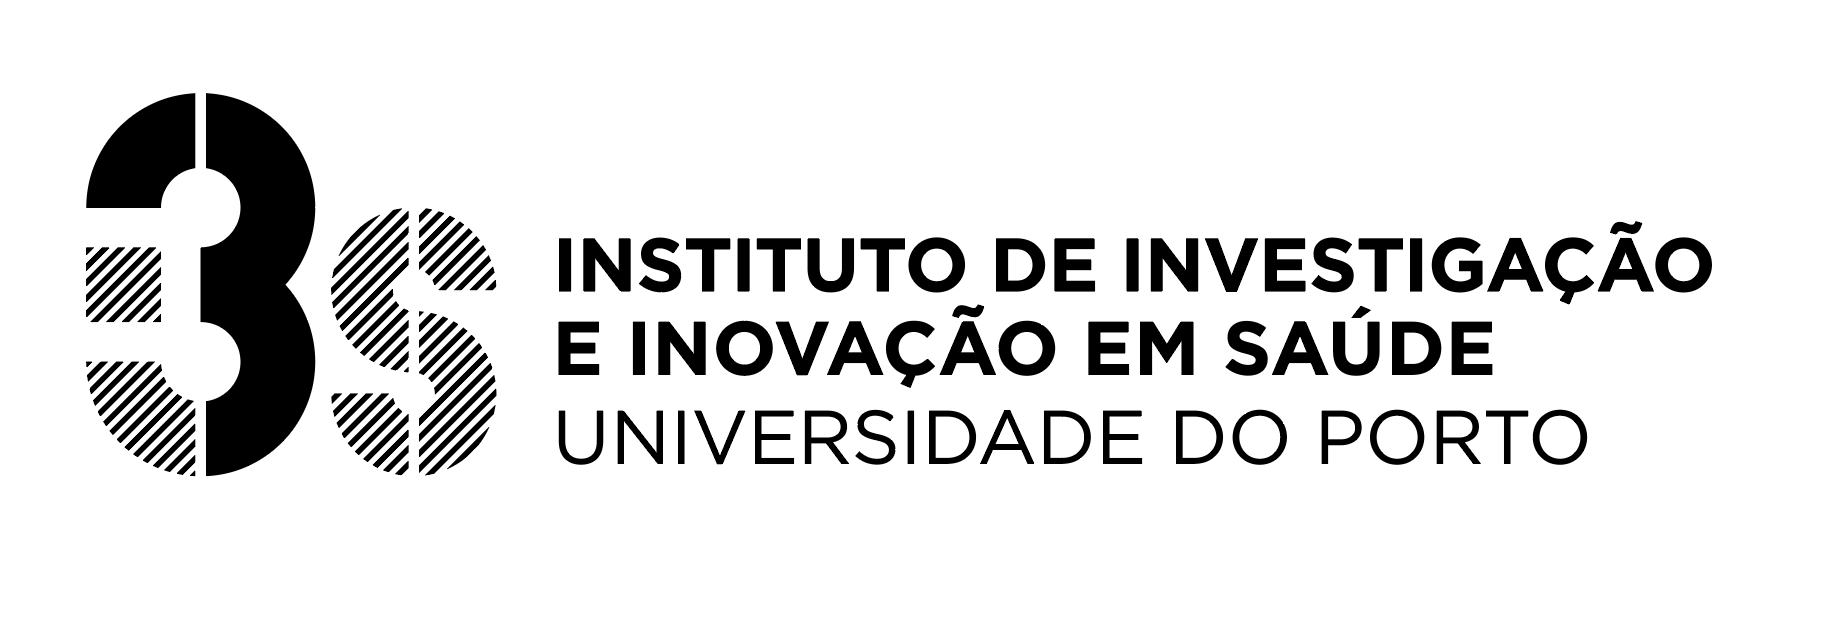 i3S - Instituto de Investigação e Inovação em Saúde